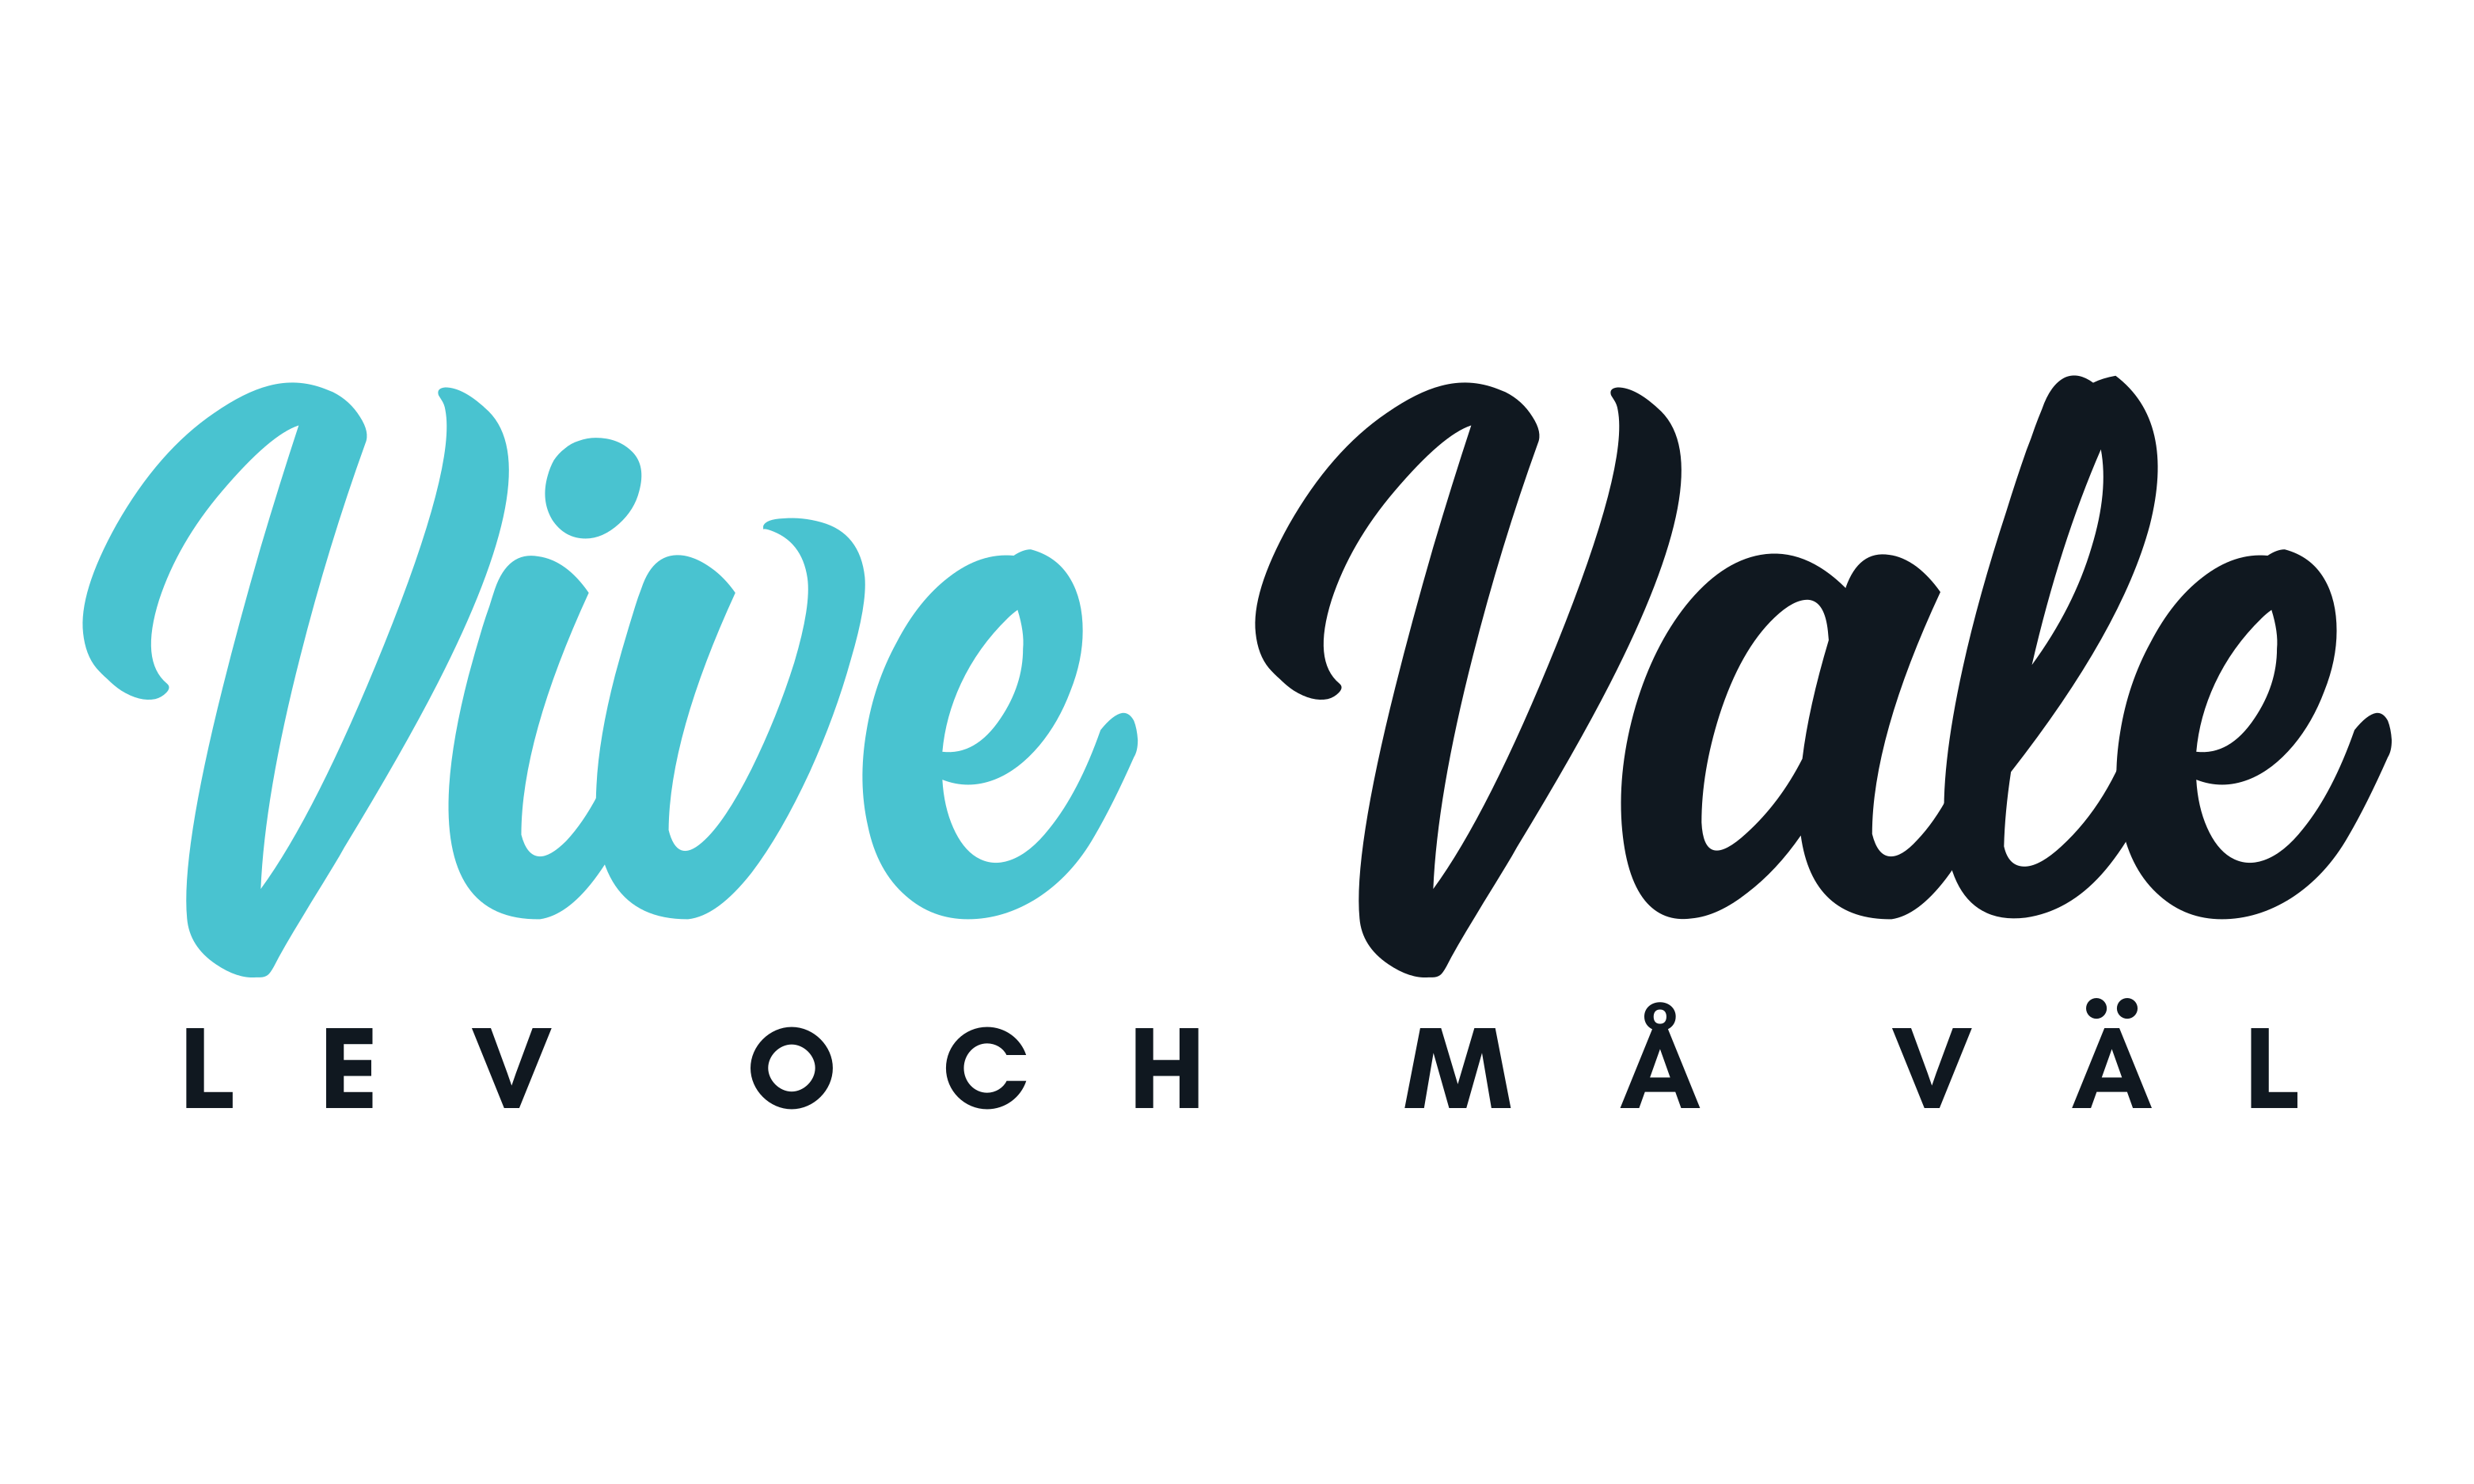 Vive Vale- Lev och Må Väl logo